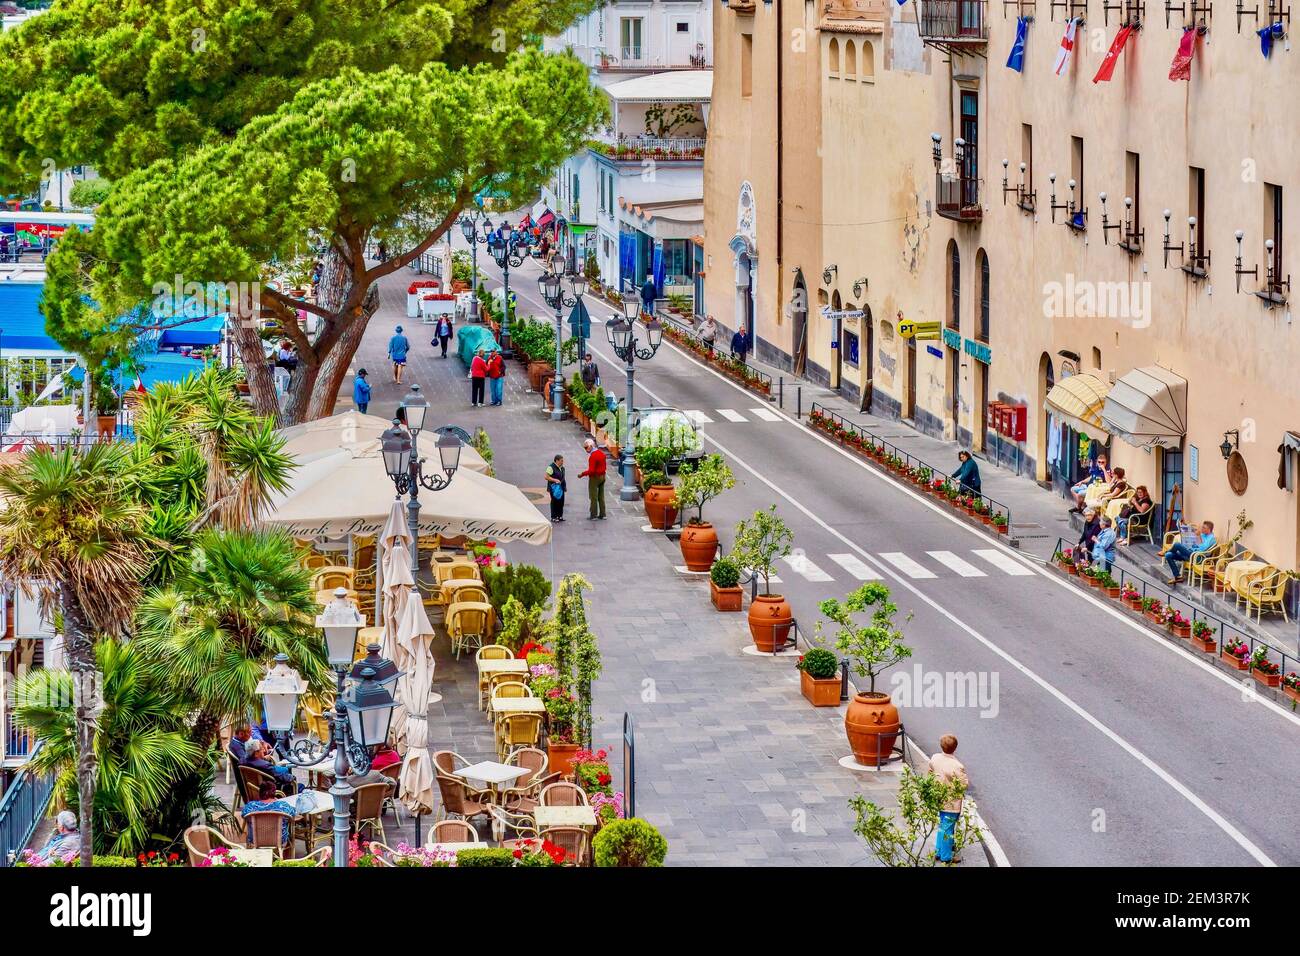 Amalfi, Italien - 20. Mai 2016. Eine Hauptstraße mit Cafés, Geschäften und Bäumen in der Stadt, die der Amalfiküste ihren Namen gibt gesäumt. Stockfoto